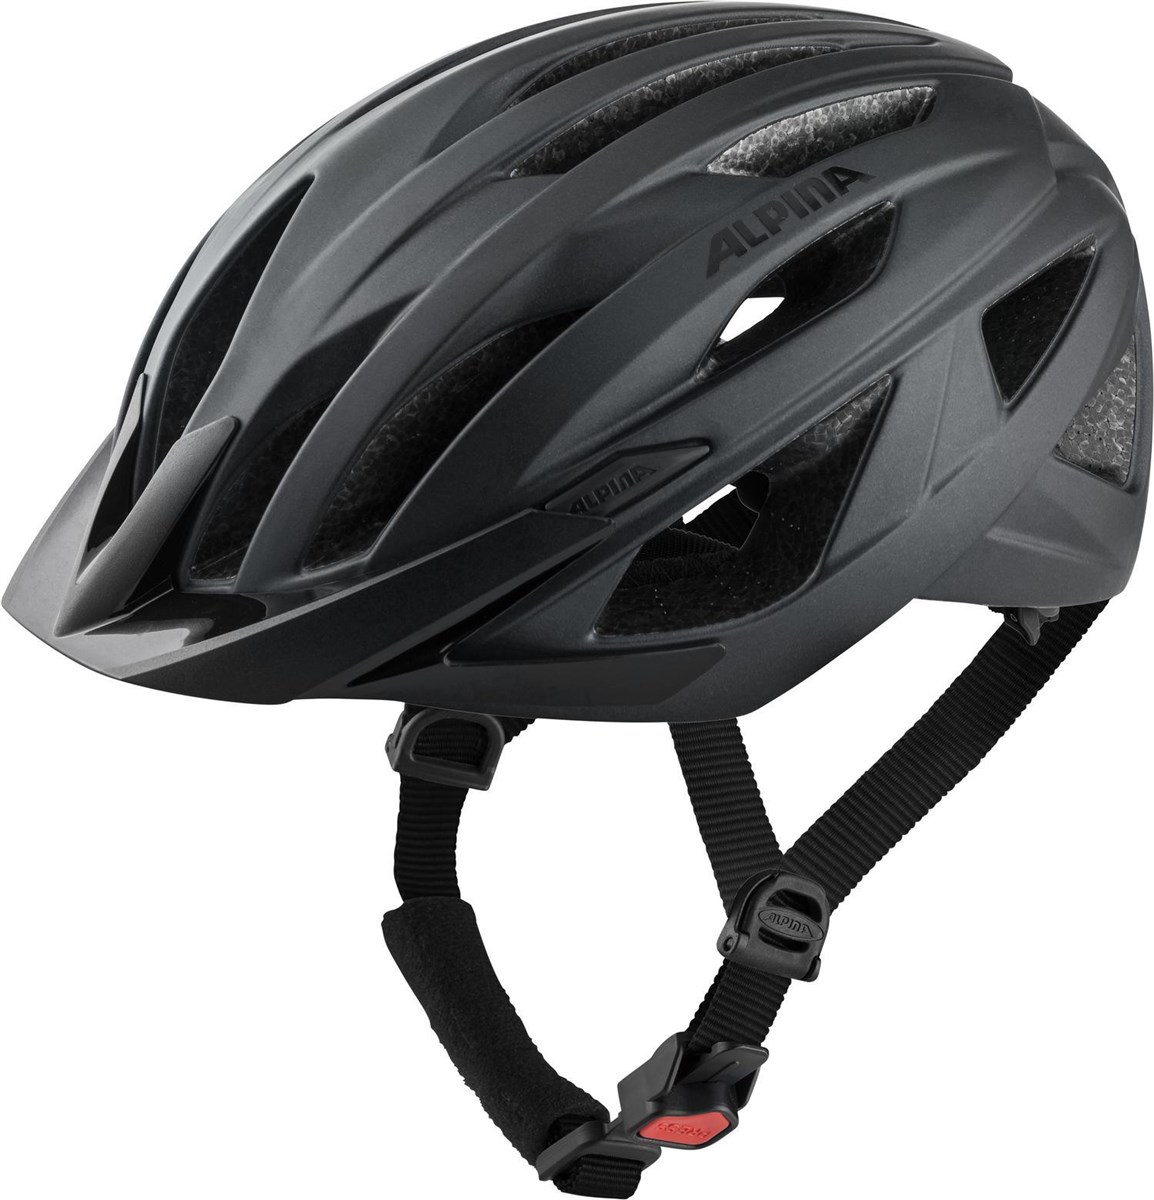 Alpina Delft Mips Road Cycling Helmet product image